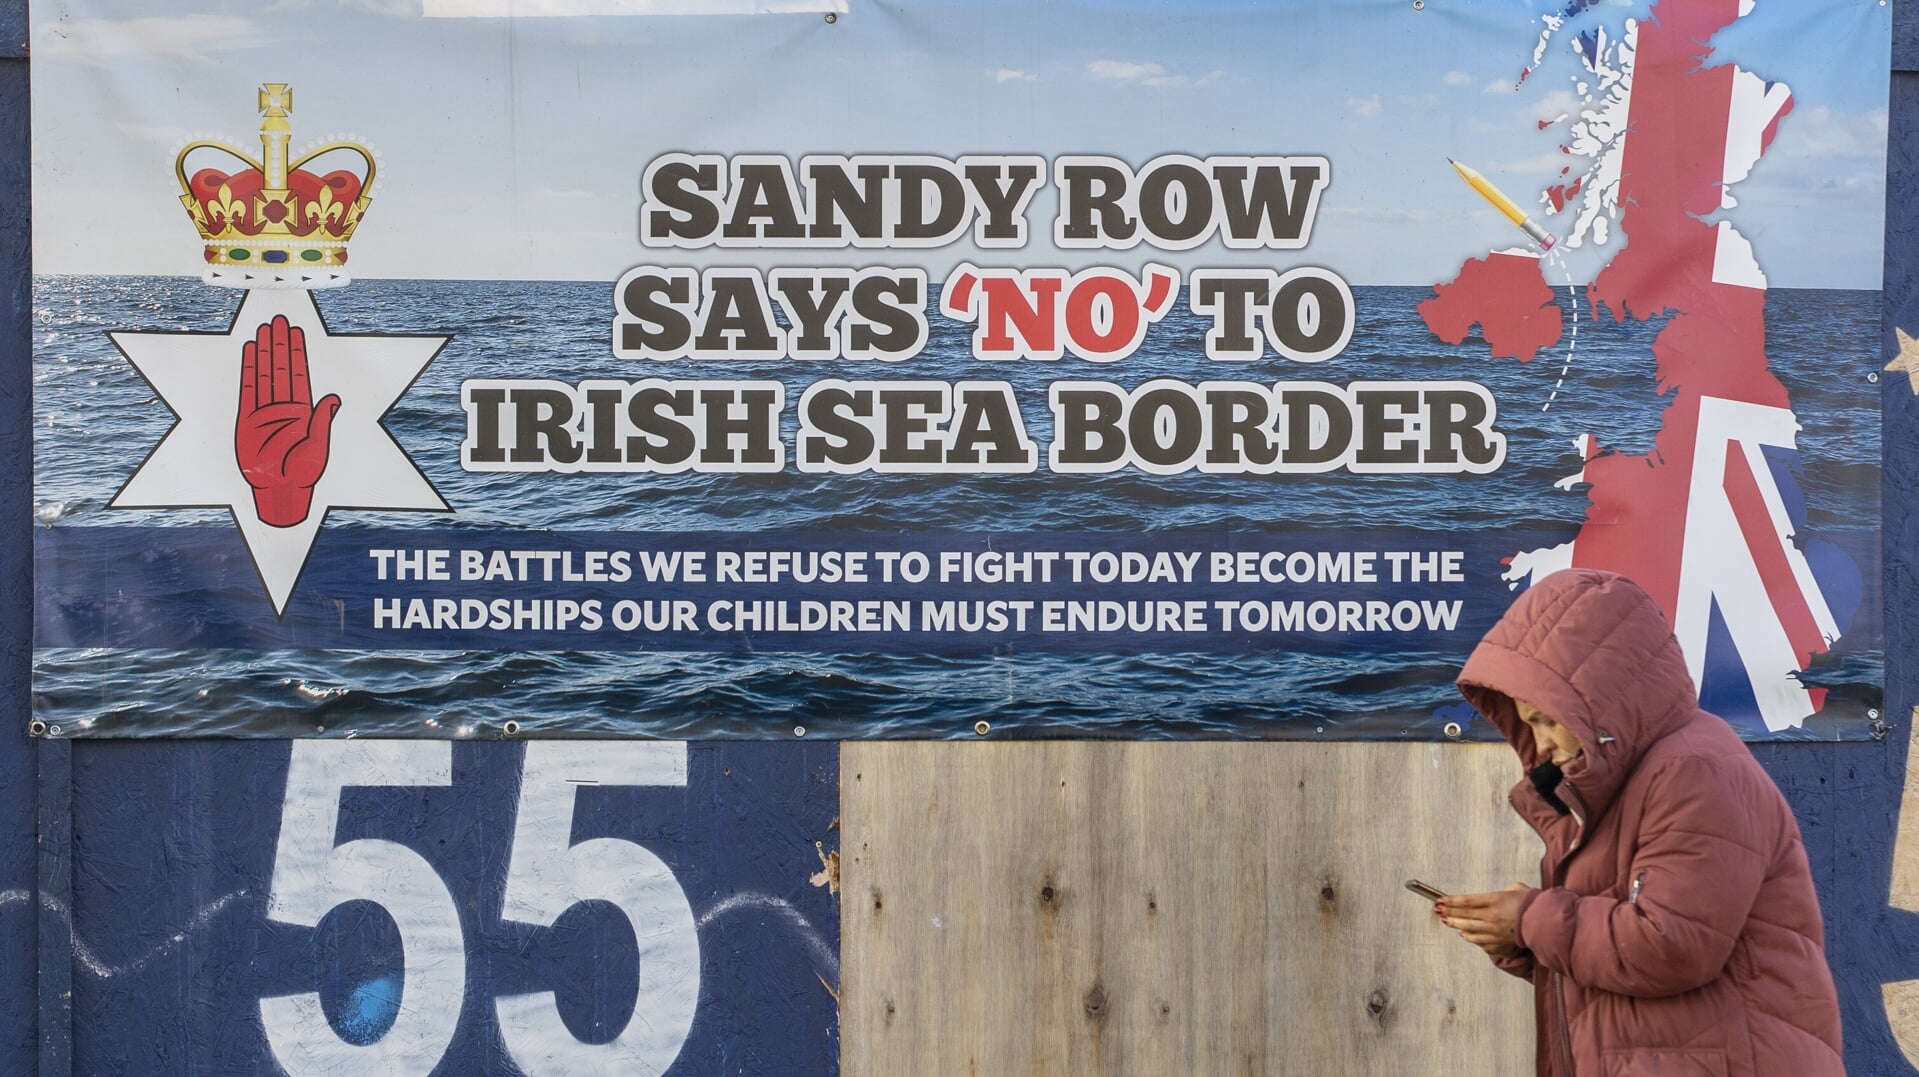 Een Noord-Iers protestbord tegen de douanegrens in de Ierse Zee. 'De veldslagen die wij vandaag niet willen uitvechten worden de ontberingen die onze kinderen in de toekomst moeten dragen', staat op het bord te lezen.